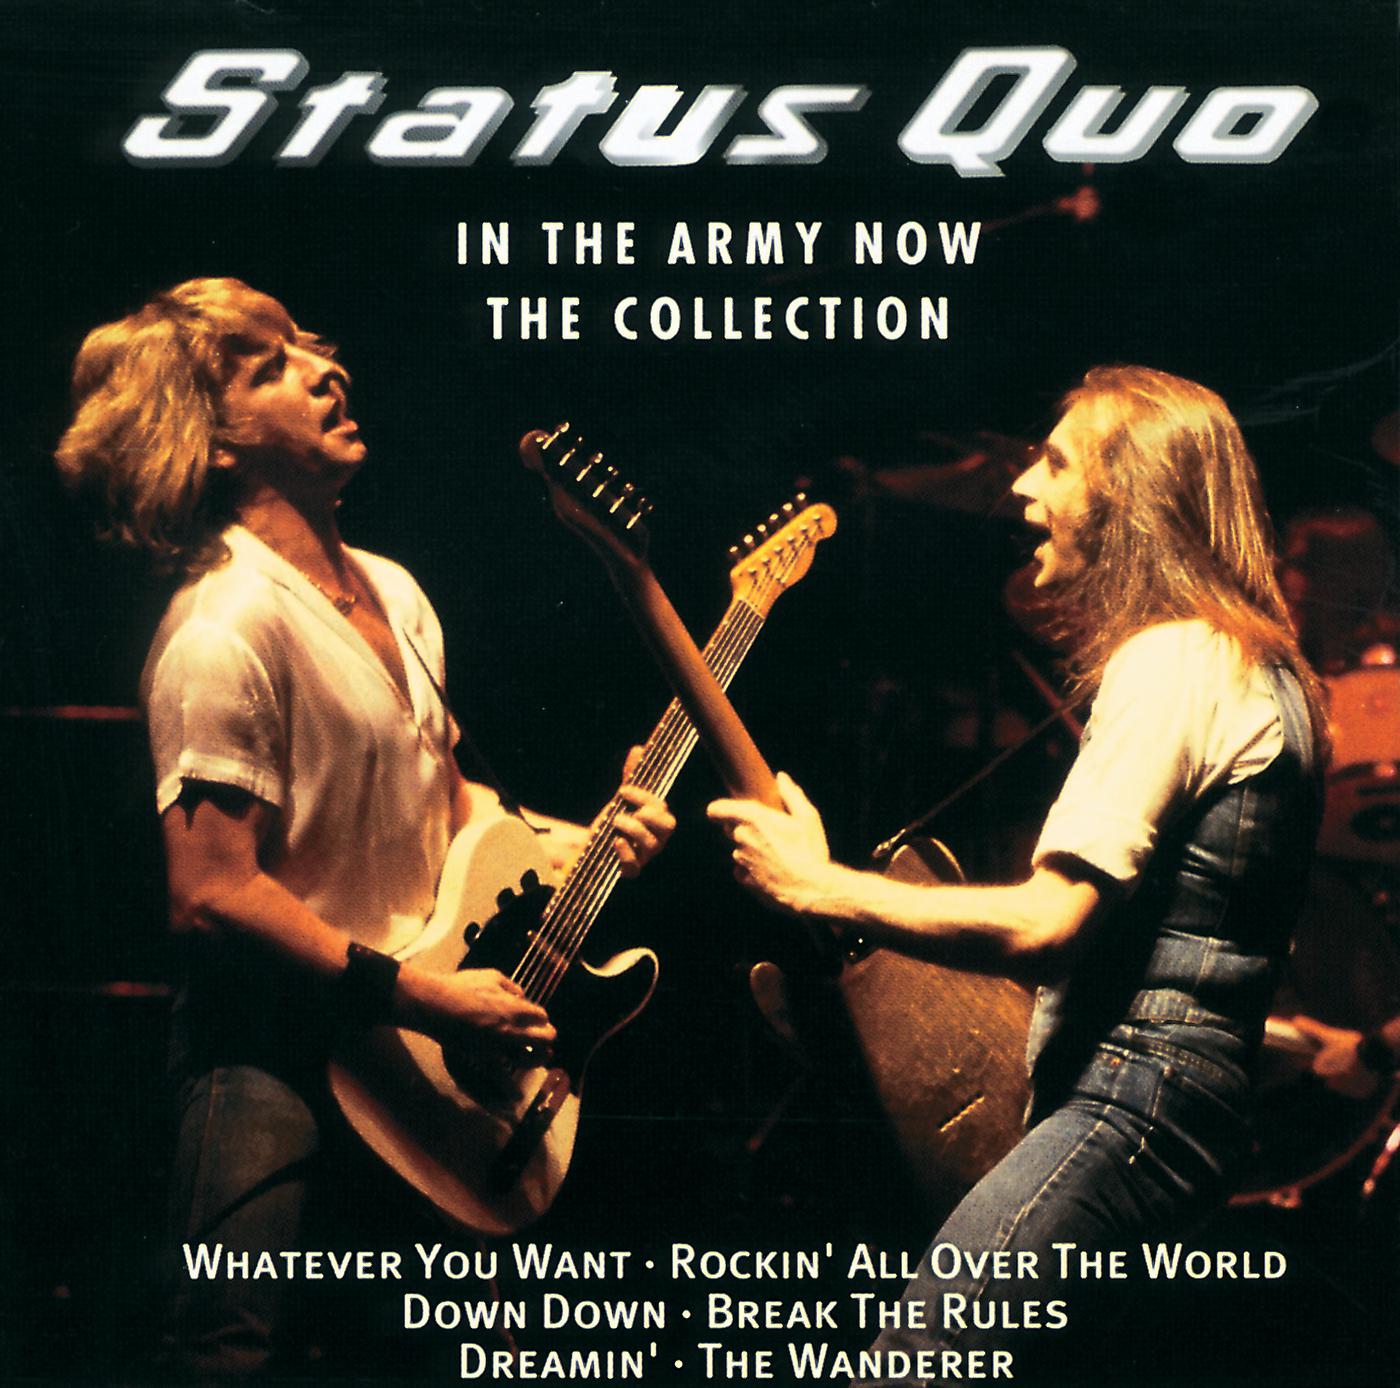 Статус кво ремикс. Статус-кво in the Army. Группа status Quo in the Army Now. Status Quo обложки альбомов. Статус кво группа альбомы обложки.